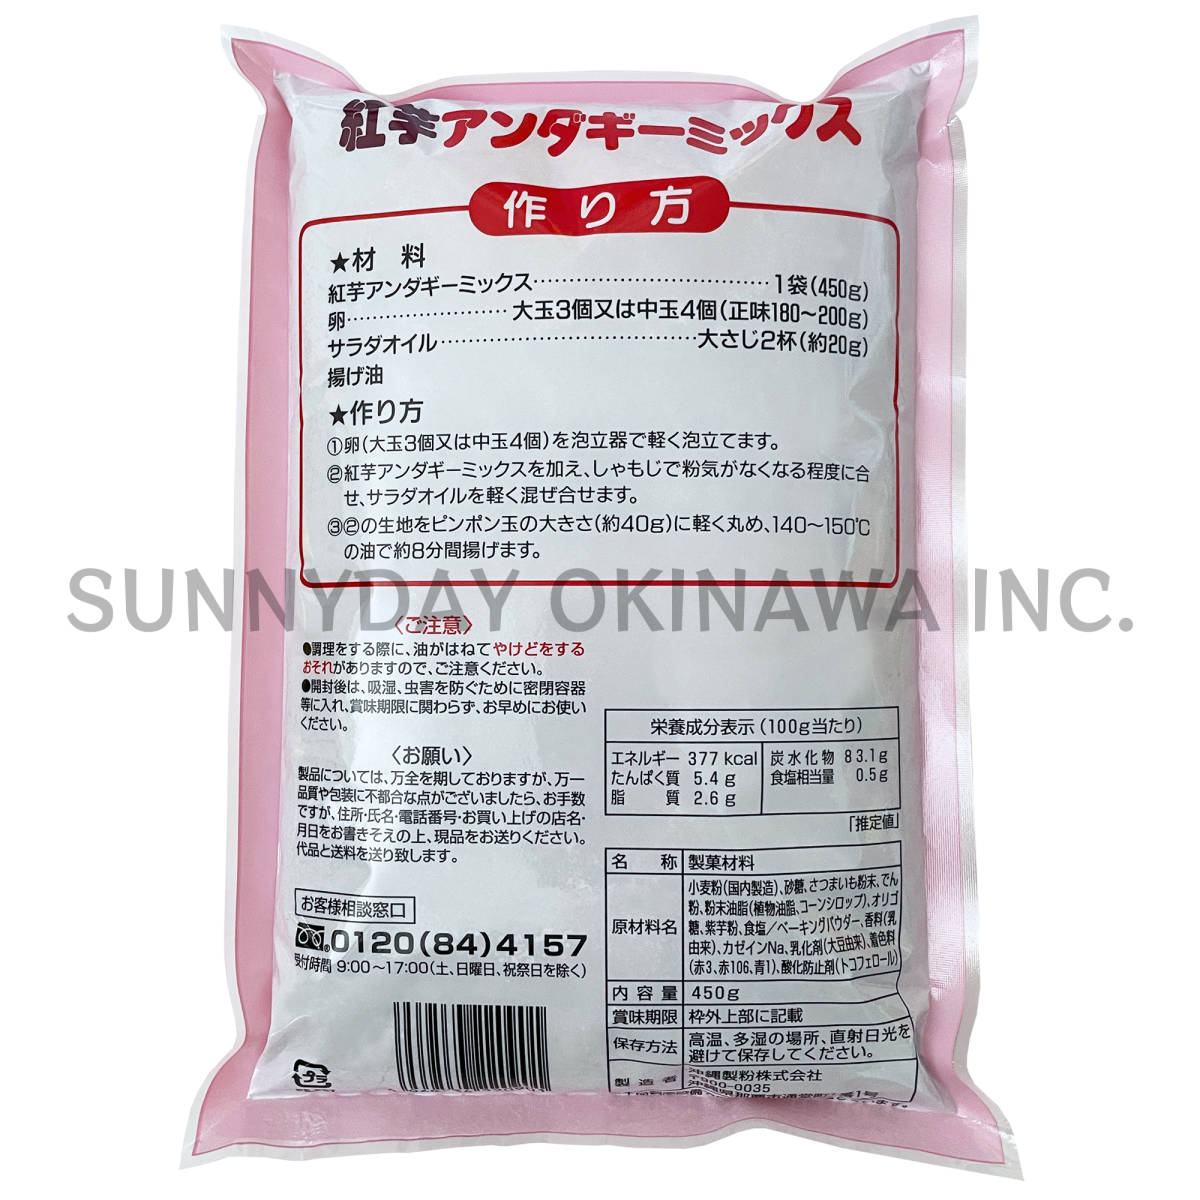 . клубень нижний gi- Mix 3 пакет Okinawa производства мука смешанная мука .... земля производство ваш заказ 